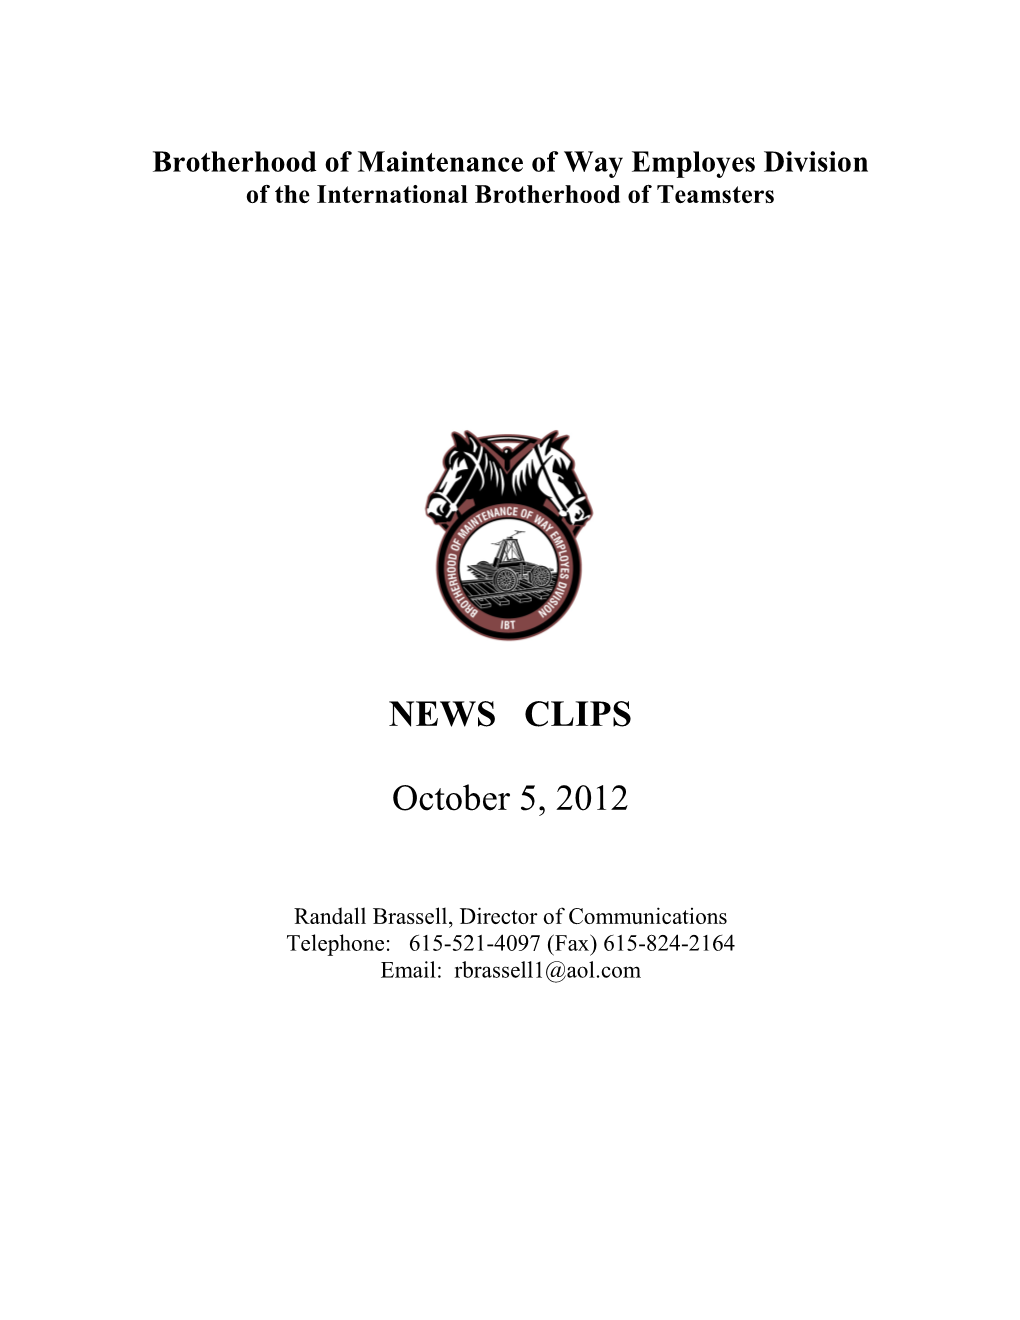 EWS CLIPS October 5, 2012